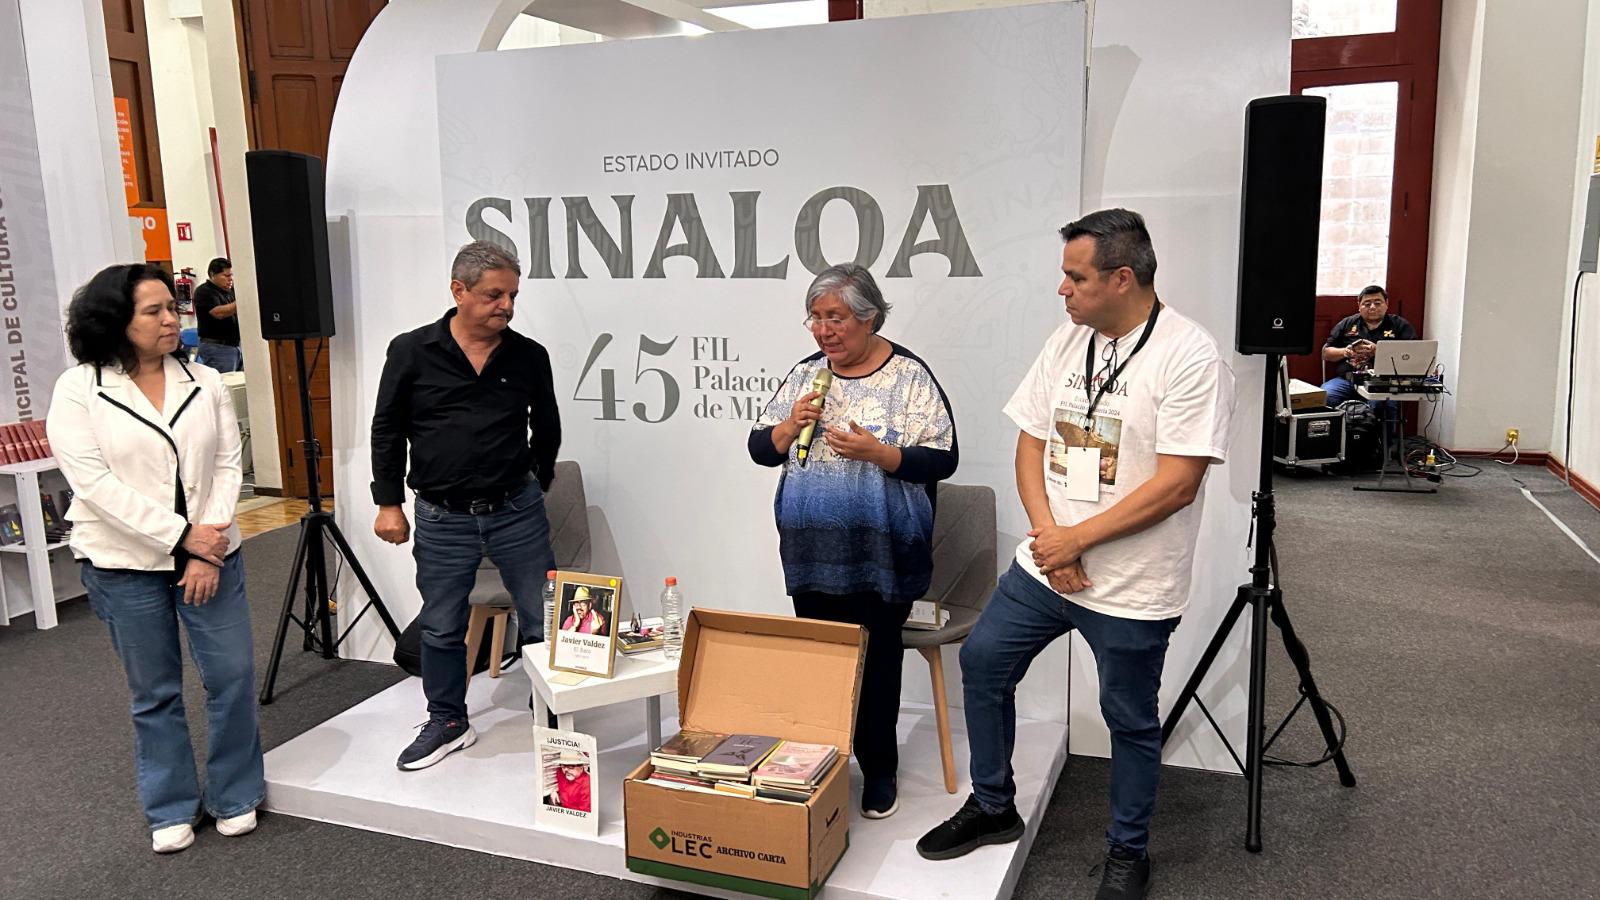 $!La participación de Sinaloa en la Feria del Libro del Palacio de Minería culminó con la presentación del libro de Javier Valdez.